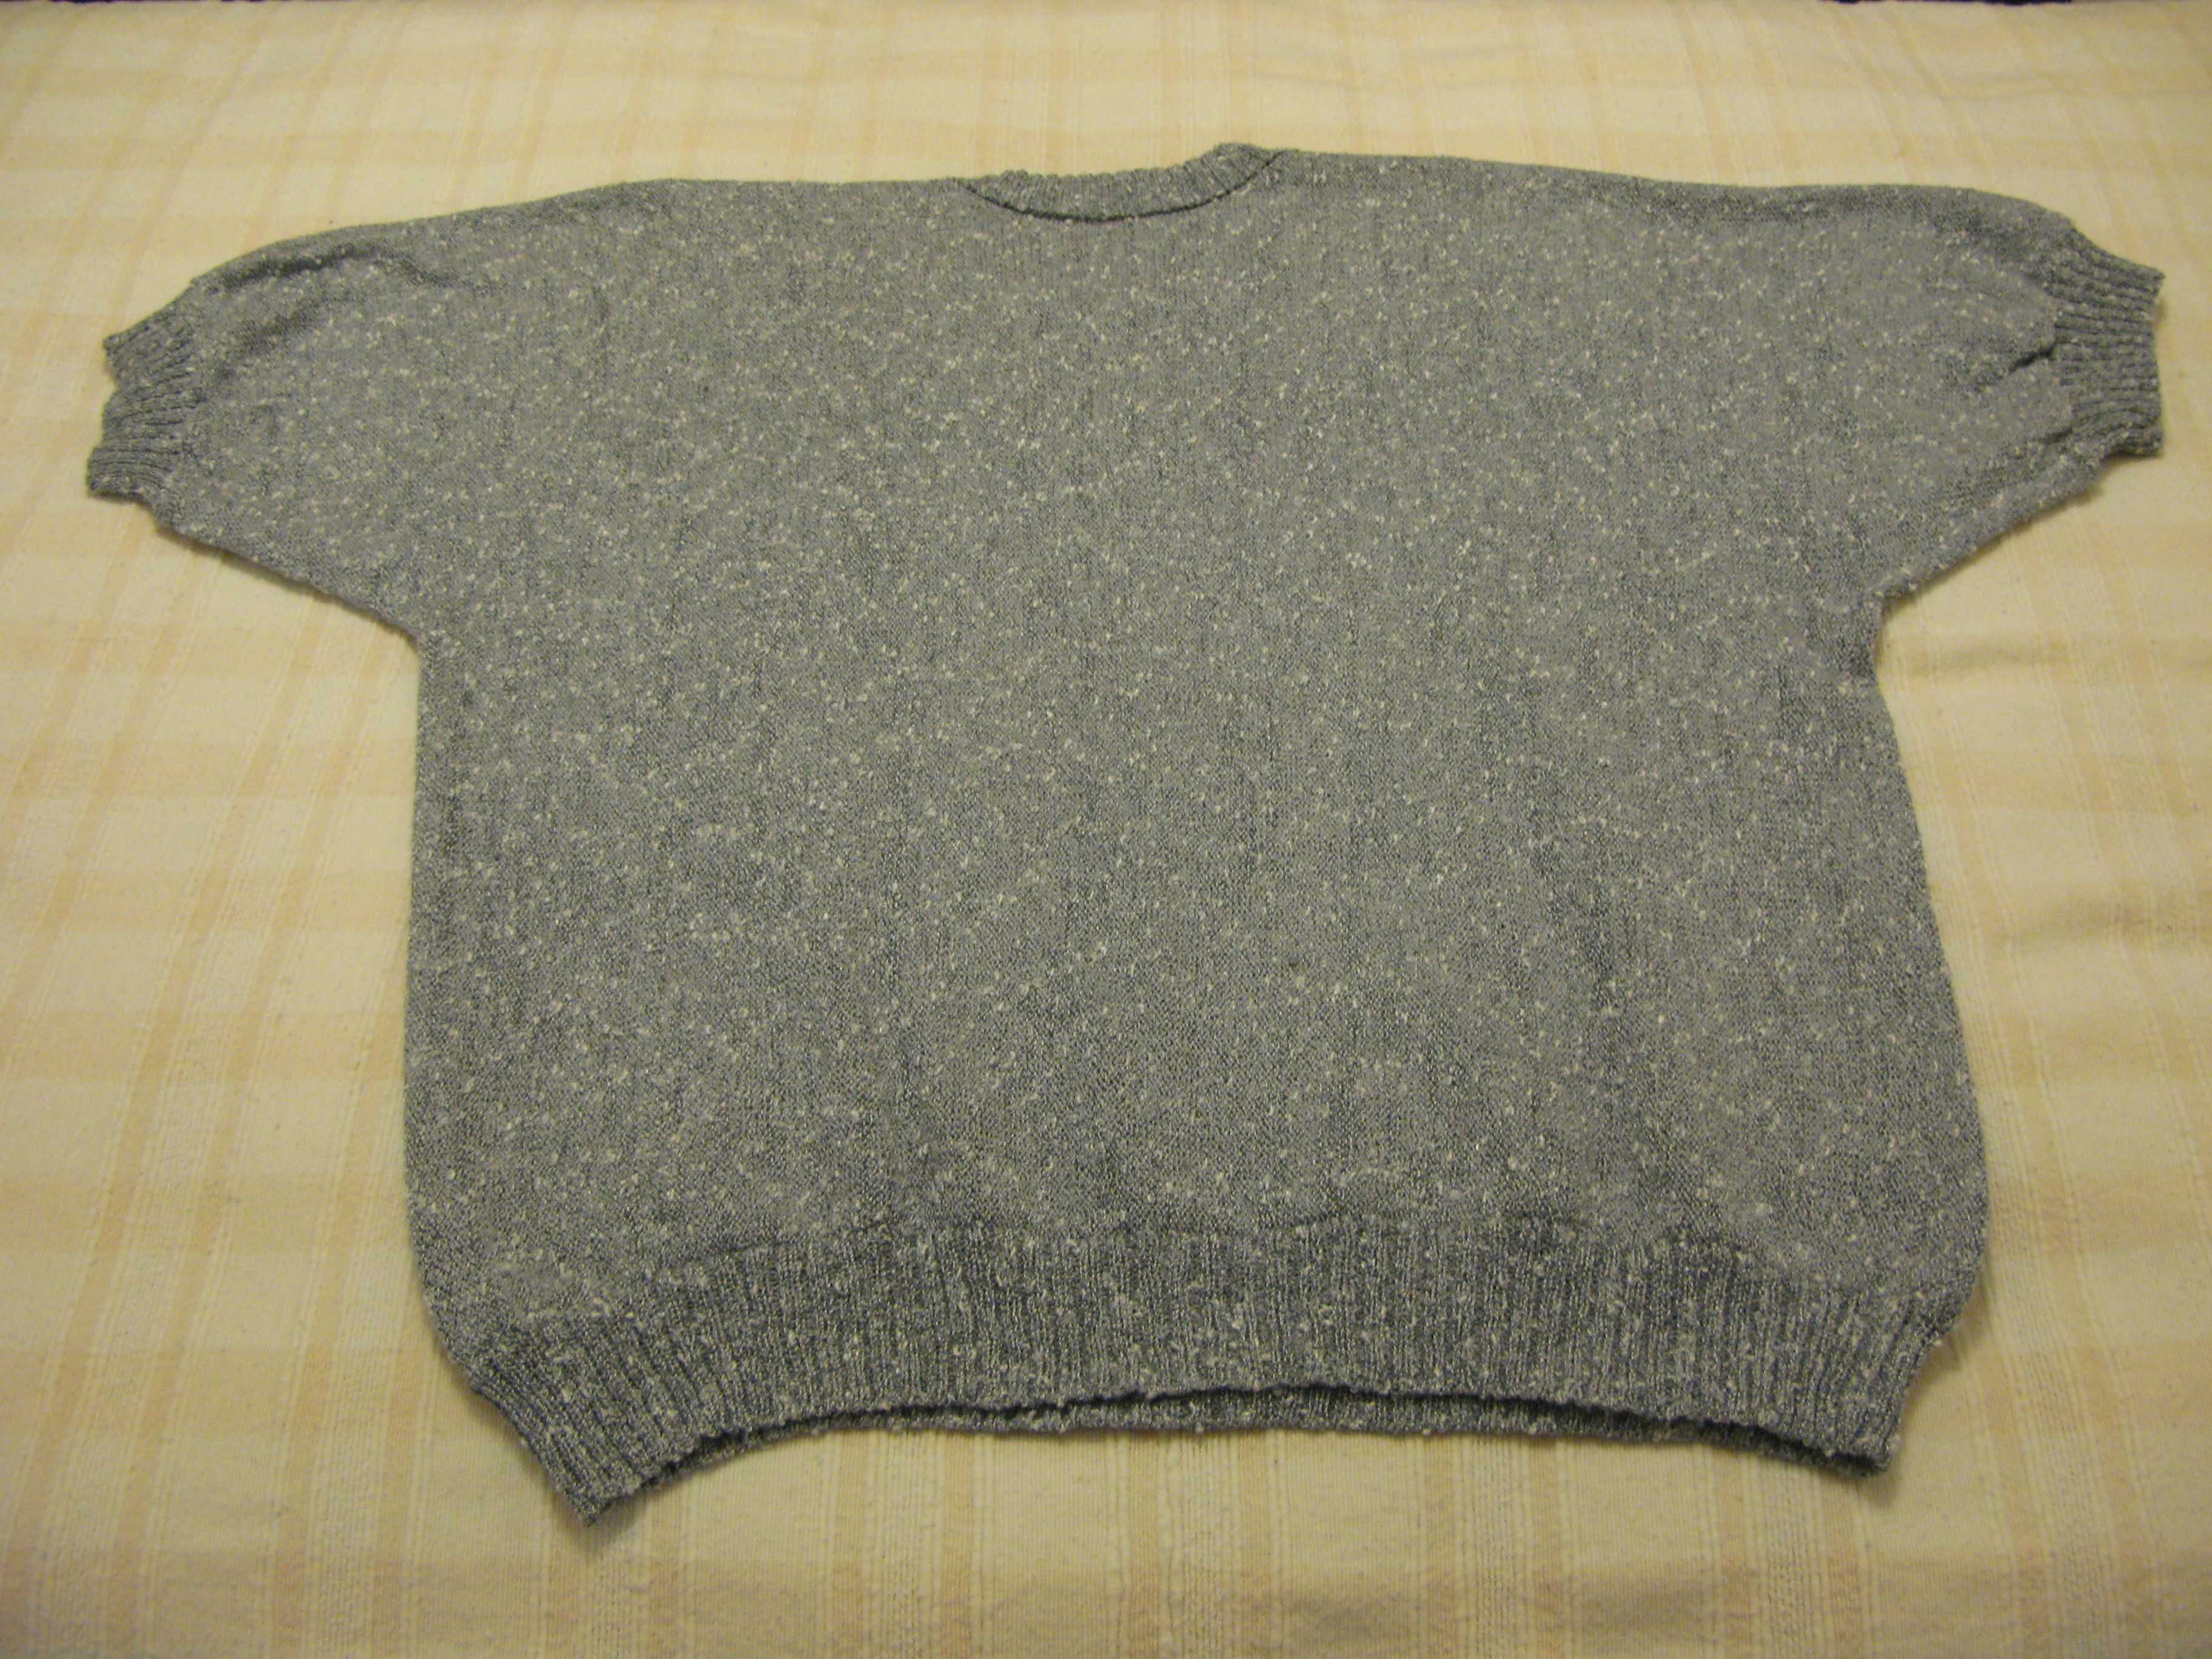 Camisola em tricot com aplicação bordada